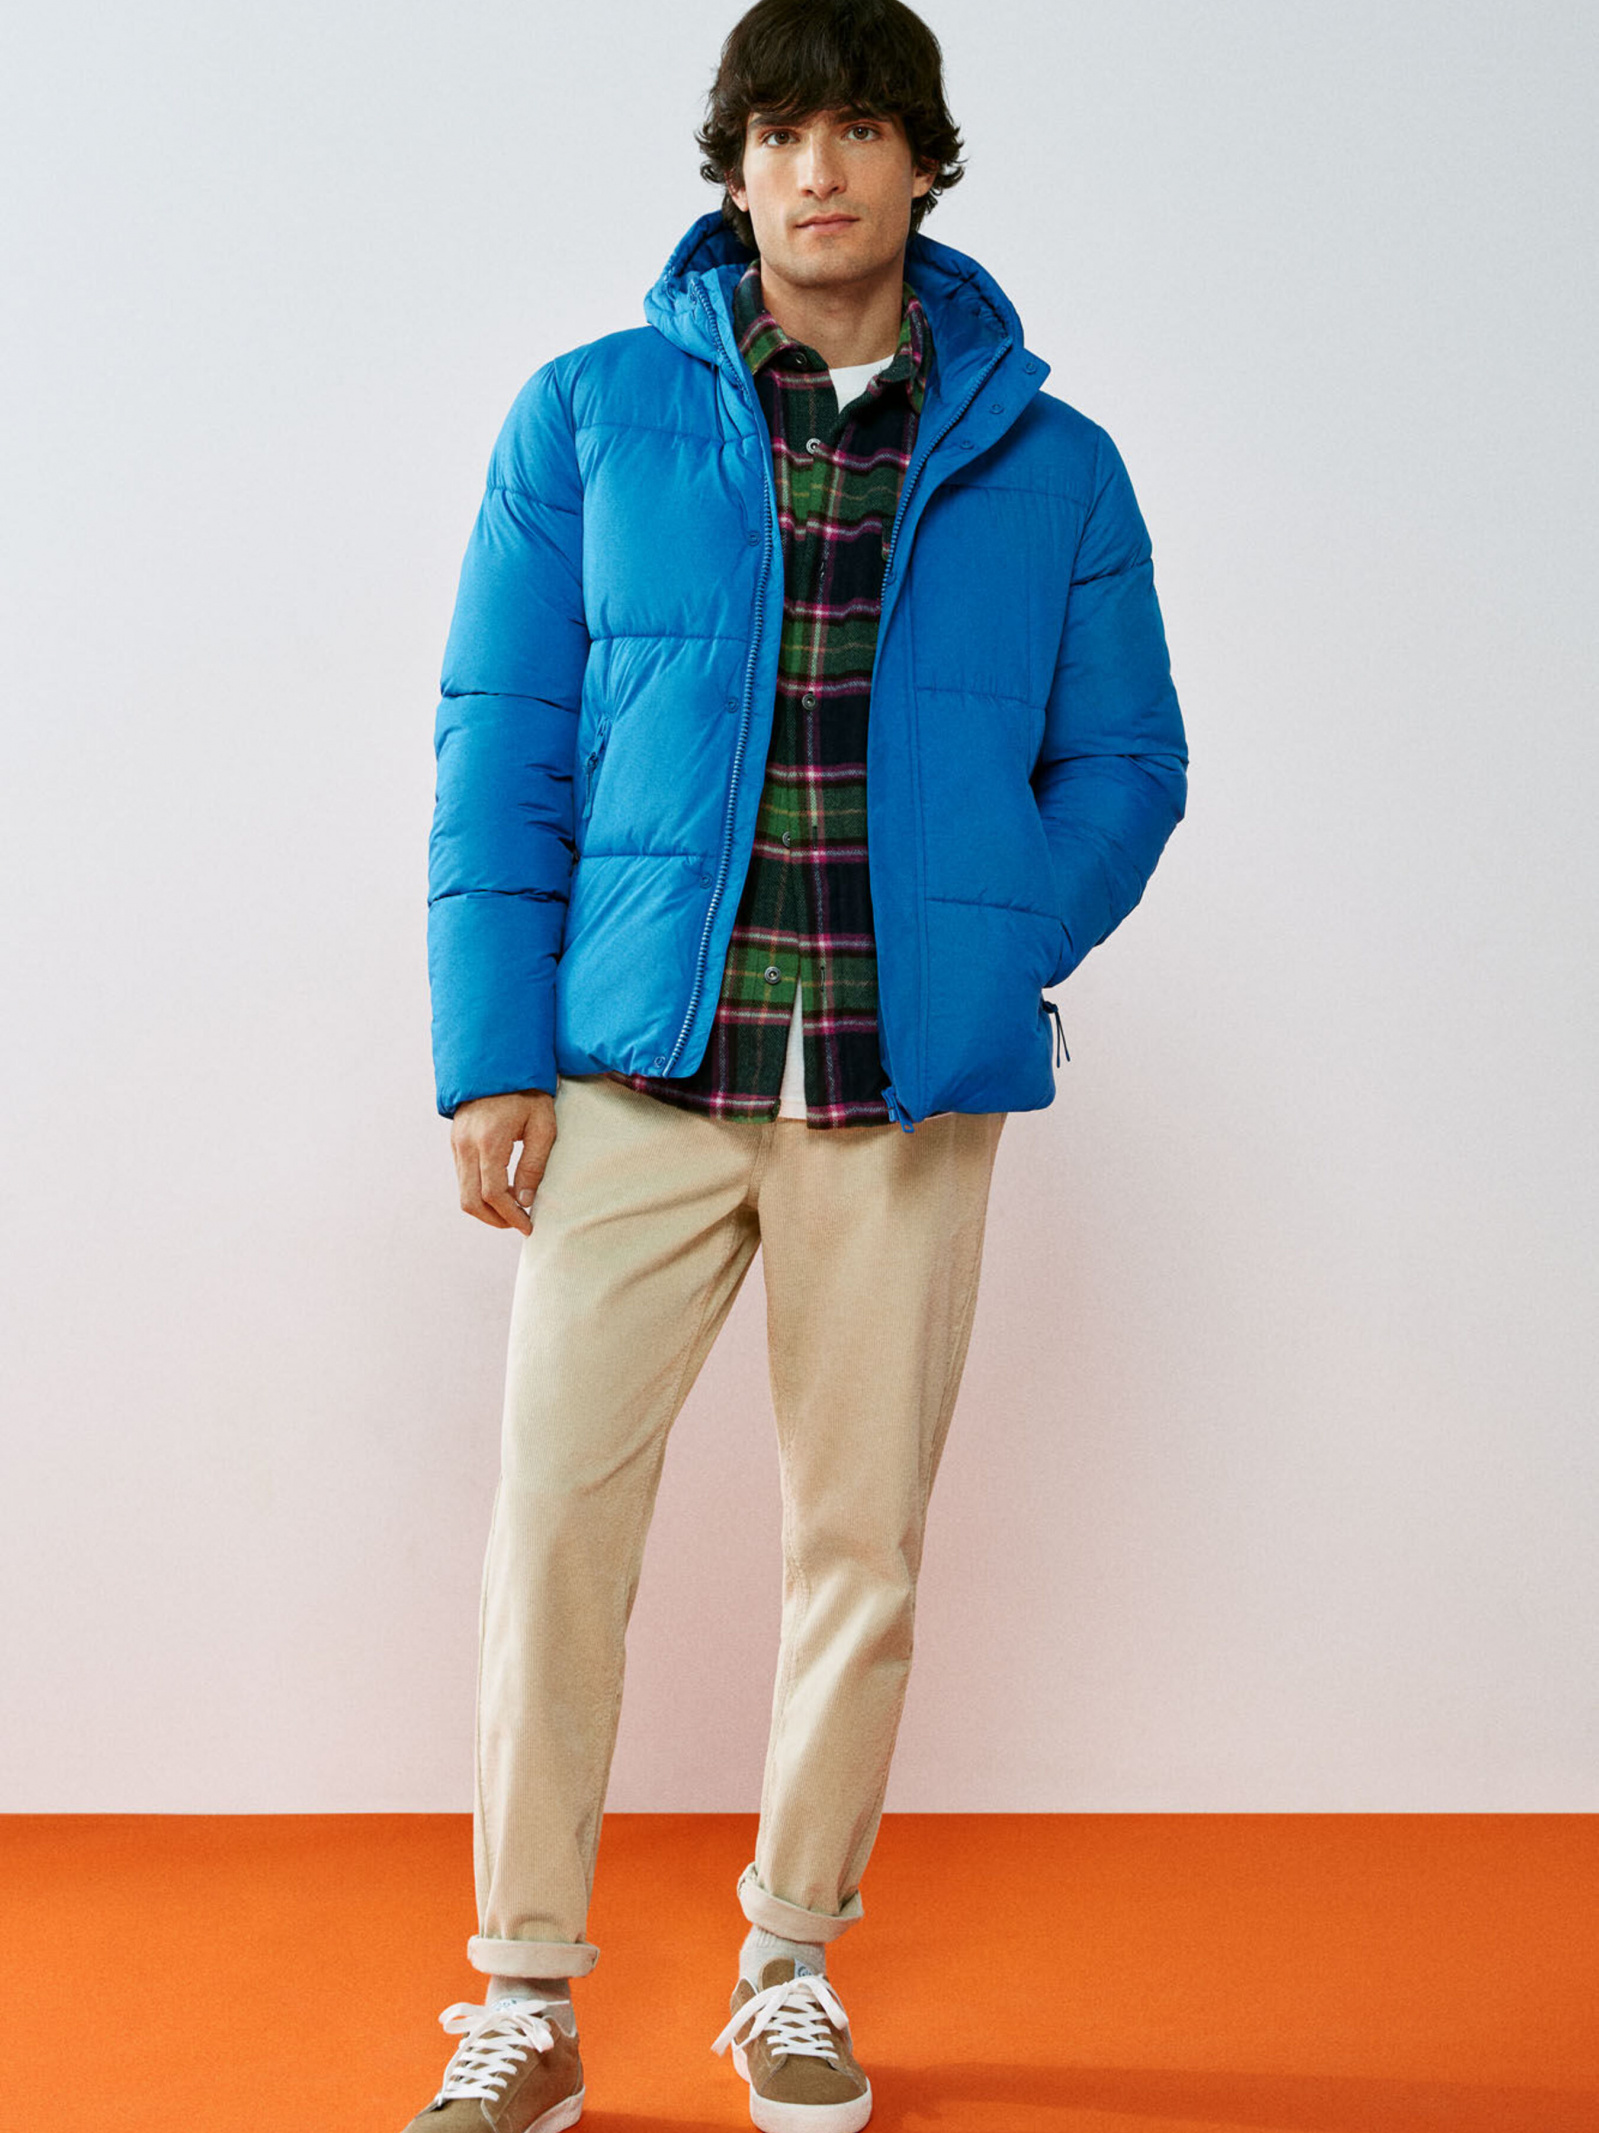 Зимняя куртка SPRINGFIELD 956391-18 для мужчин, цвет: Голубой - купить в  Киеве, Украине в магазине Intertop: цена, фото, отзывы